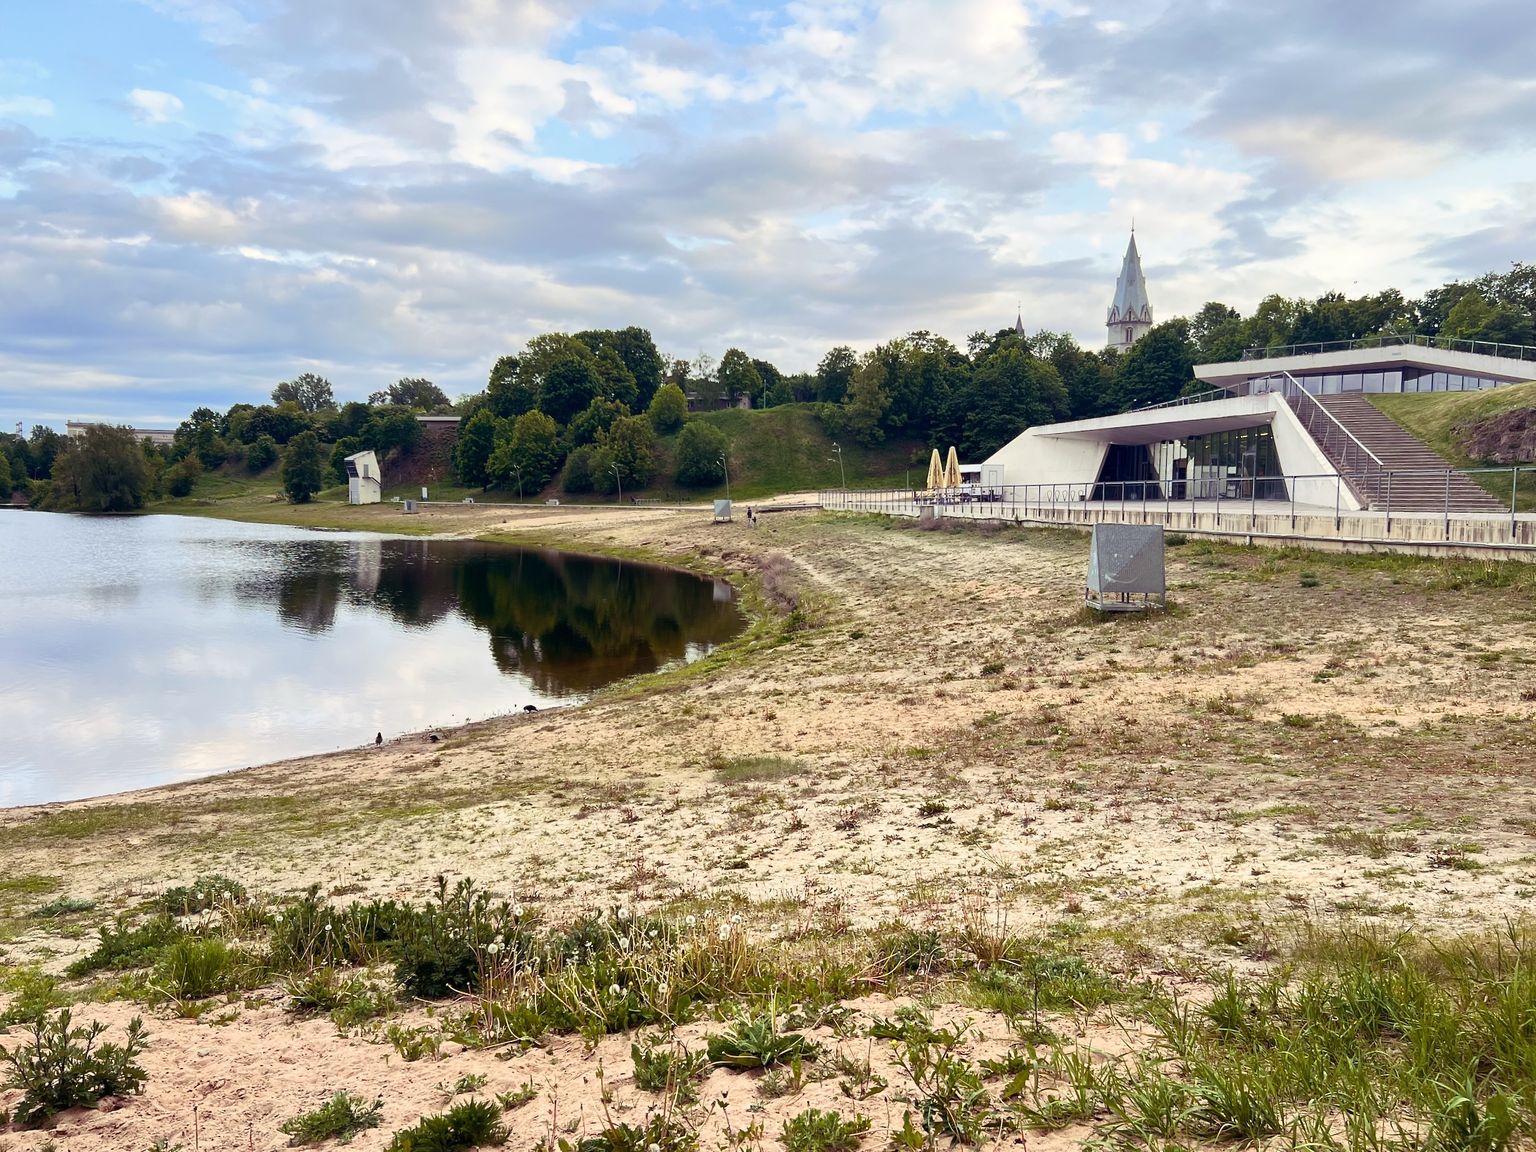 Нарвский городской пляж Йоаорг в Липовой ямке был в прошлом песчаным, но за несколько последних лет он сильно зарос травой.